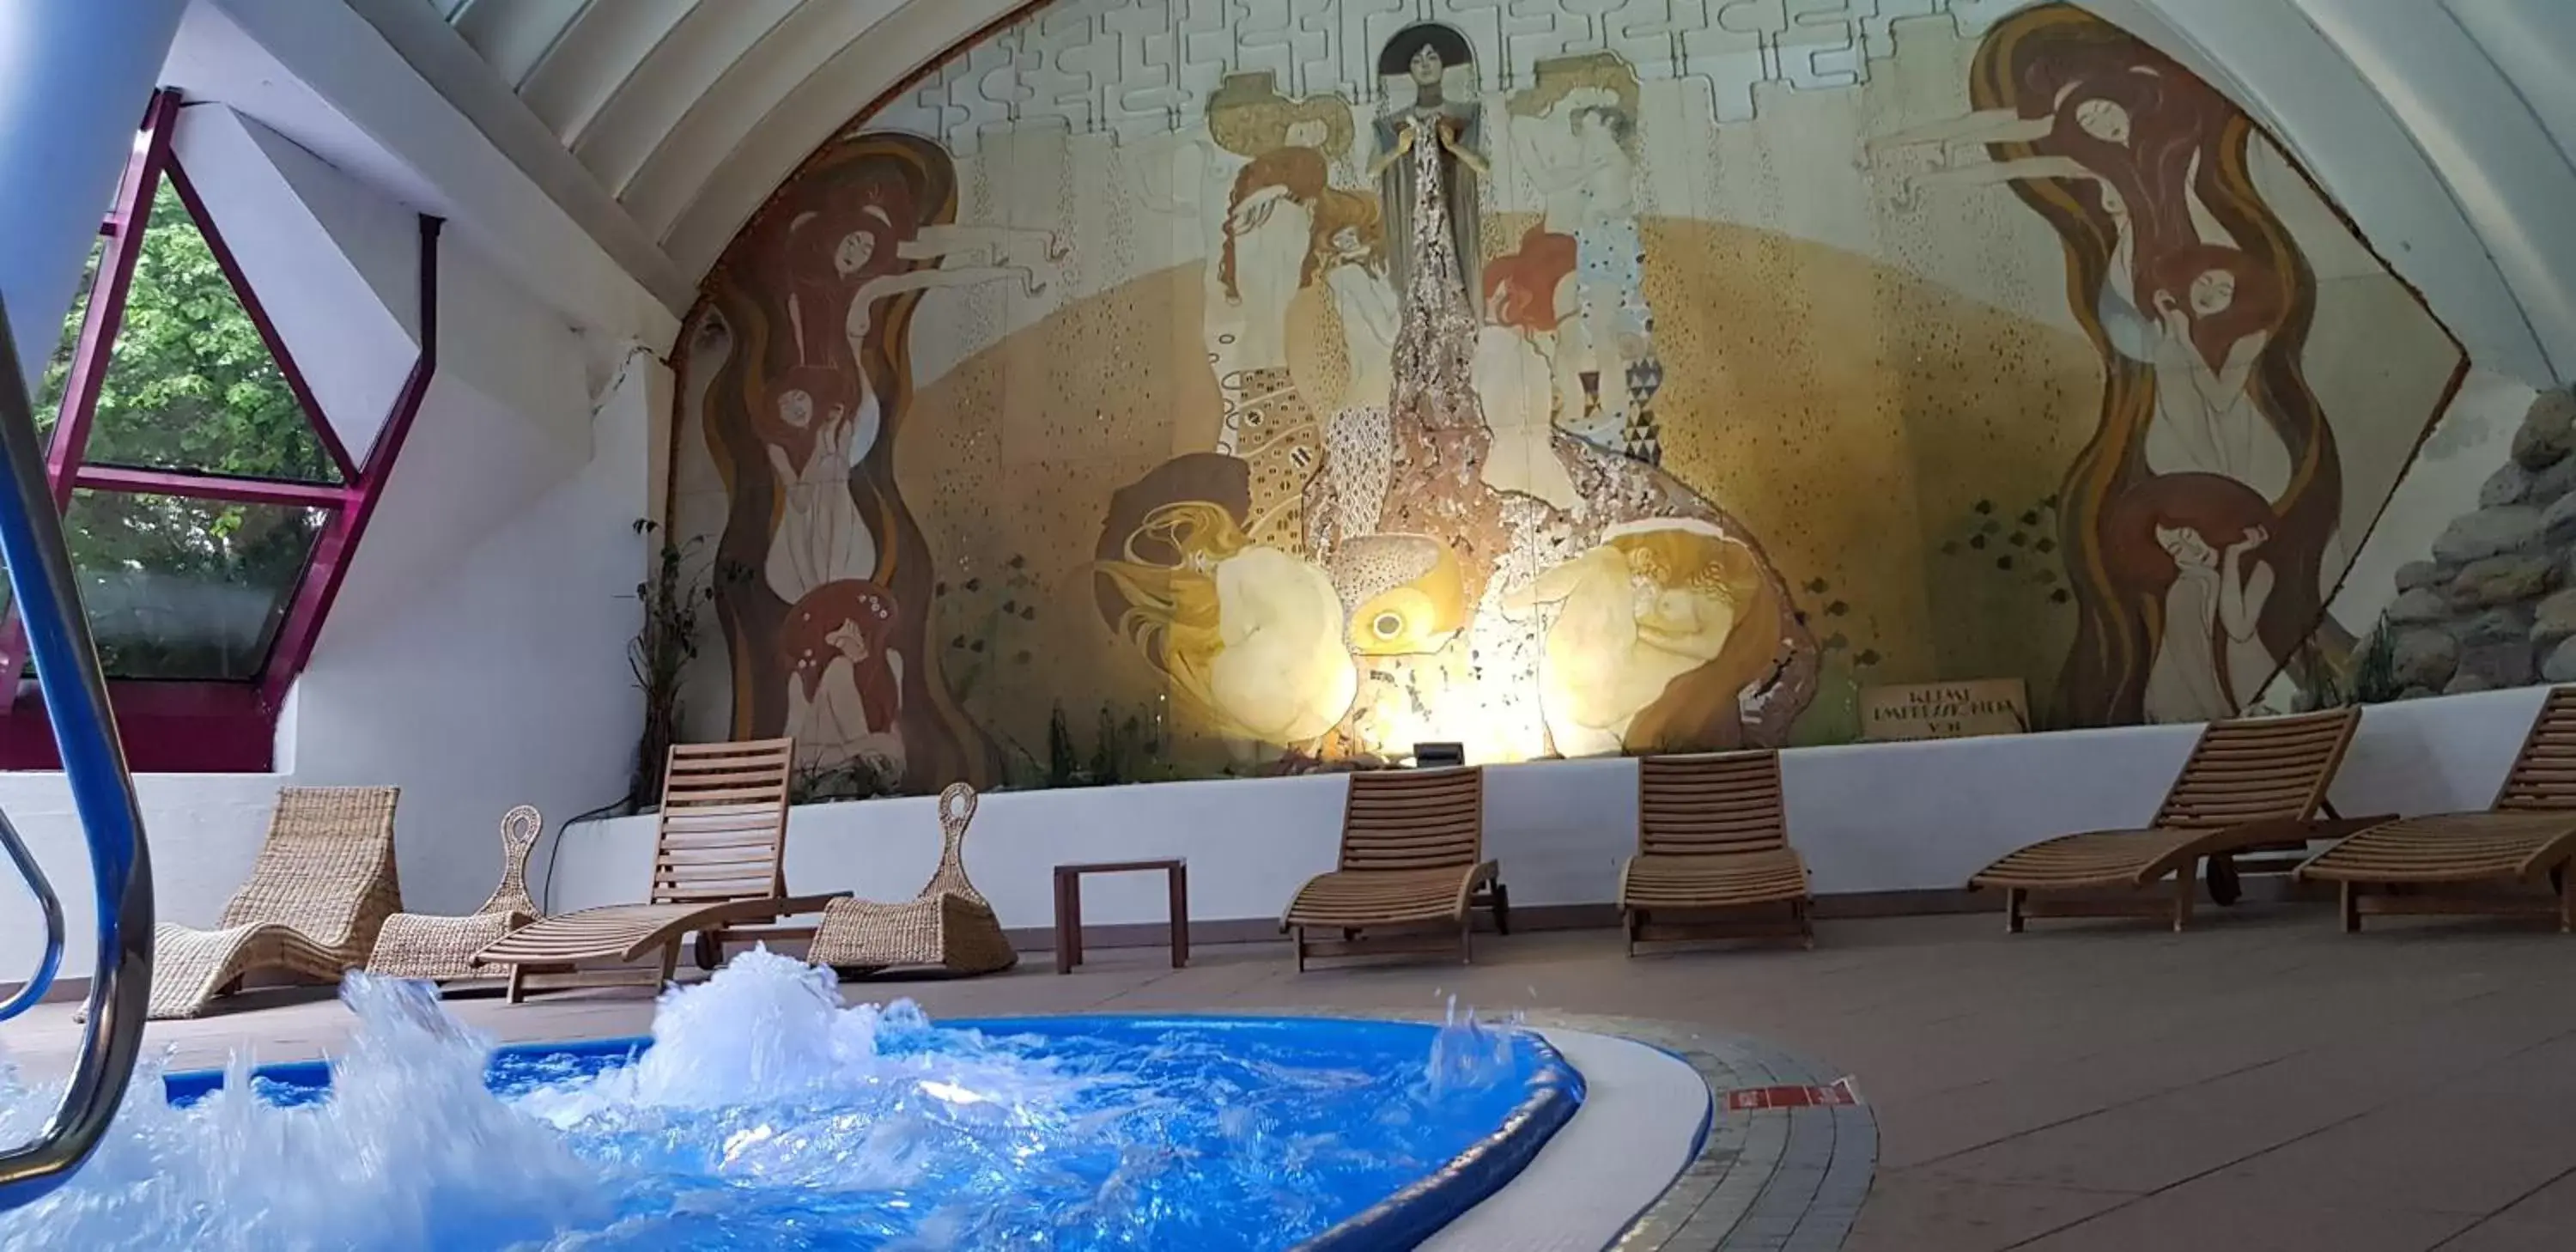 Hot Tub, Swimming Pool in Family Hotel Schloss Rosenegg